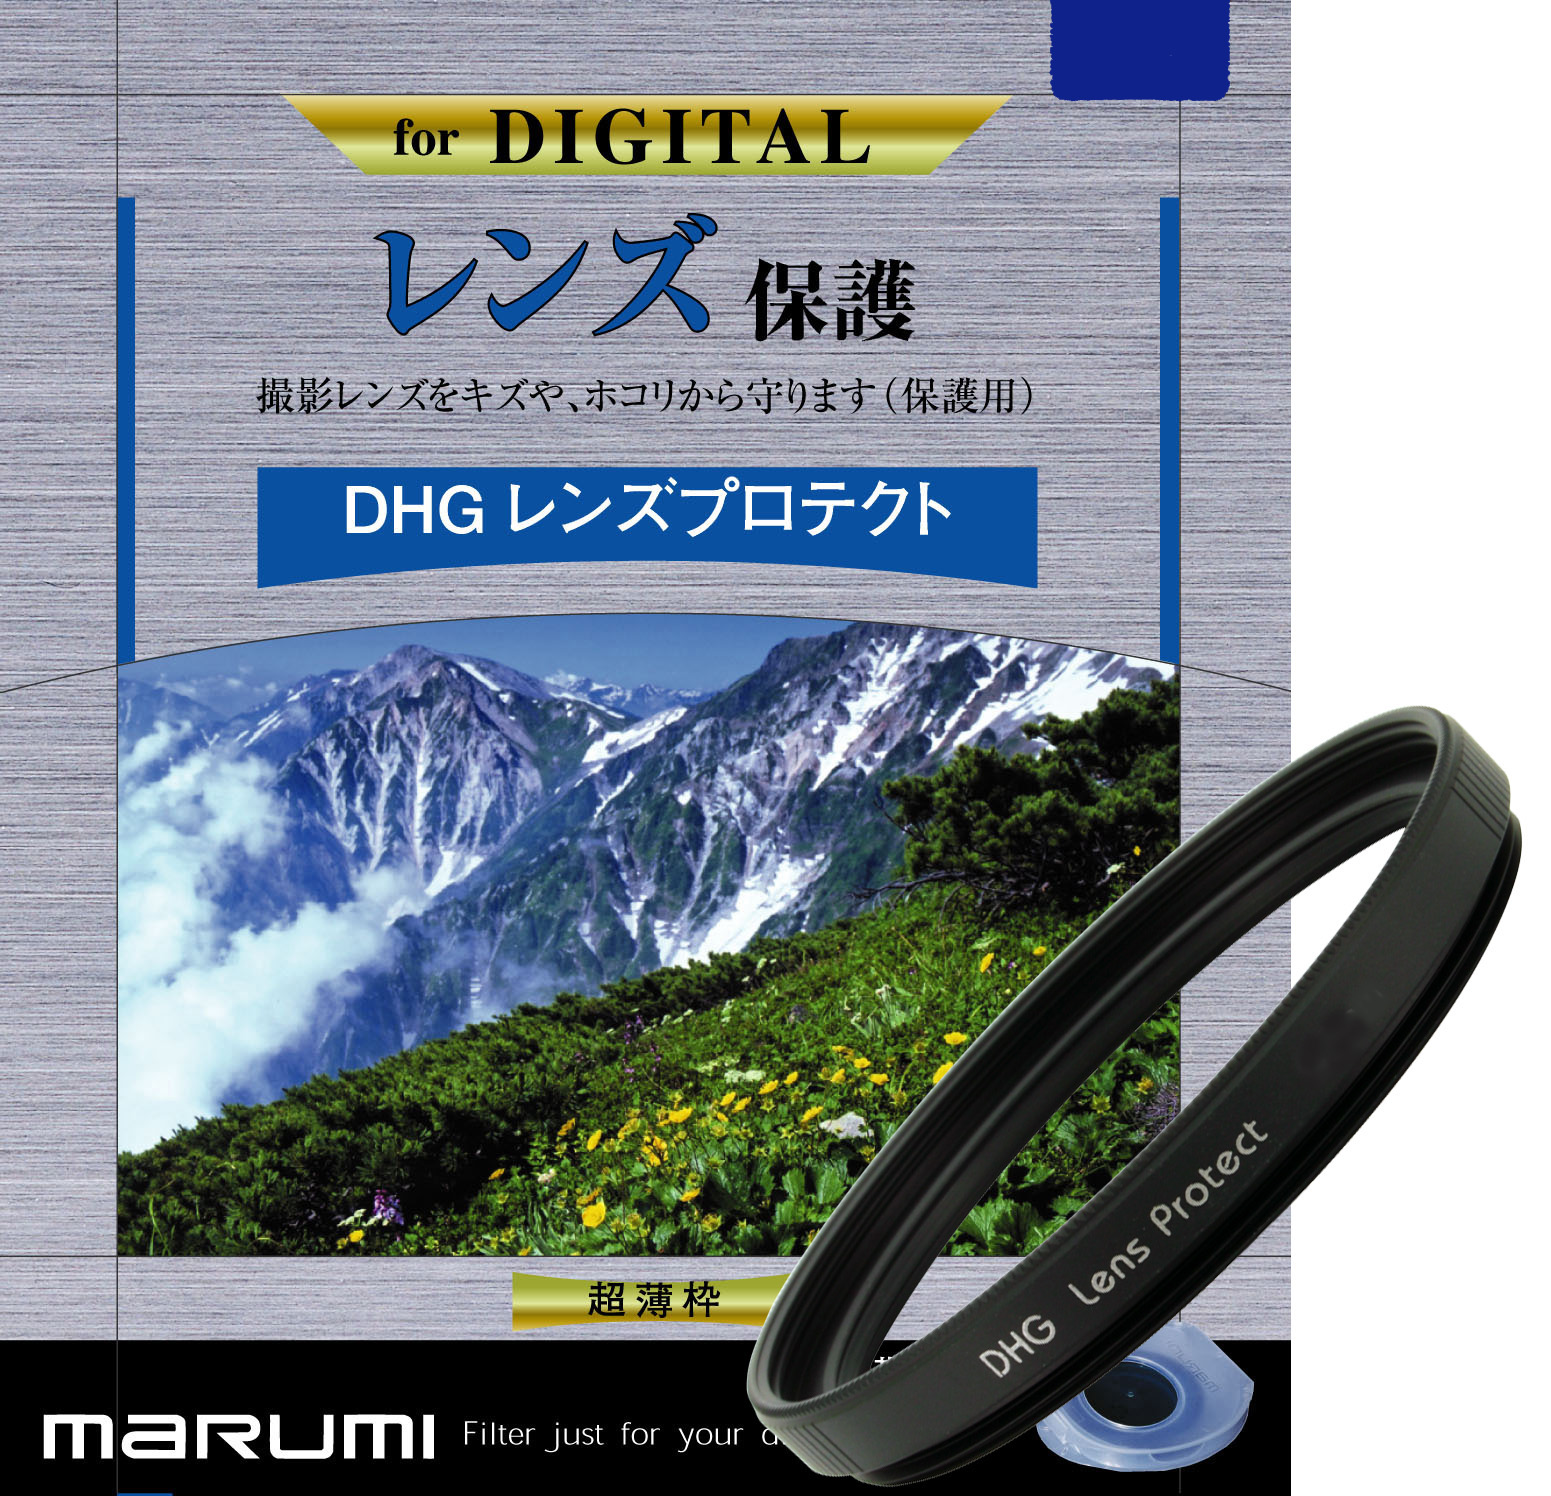 マルミ  DHG レンズプロテクト 43mm [プロテクター] MARUMI